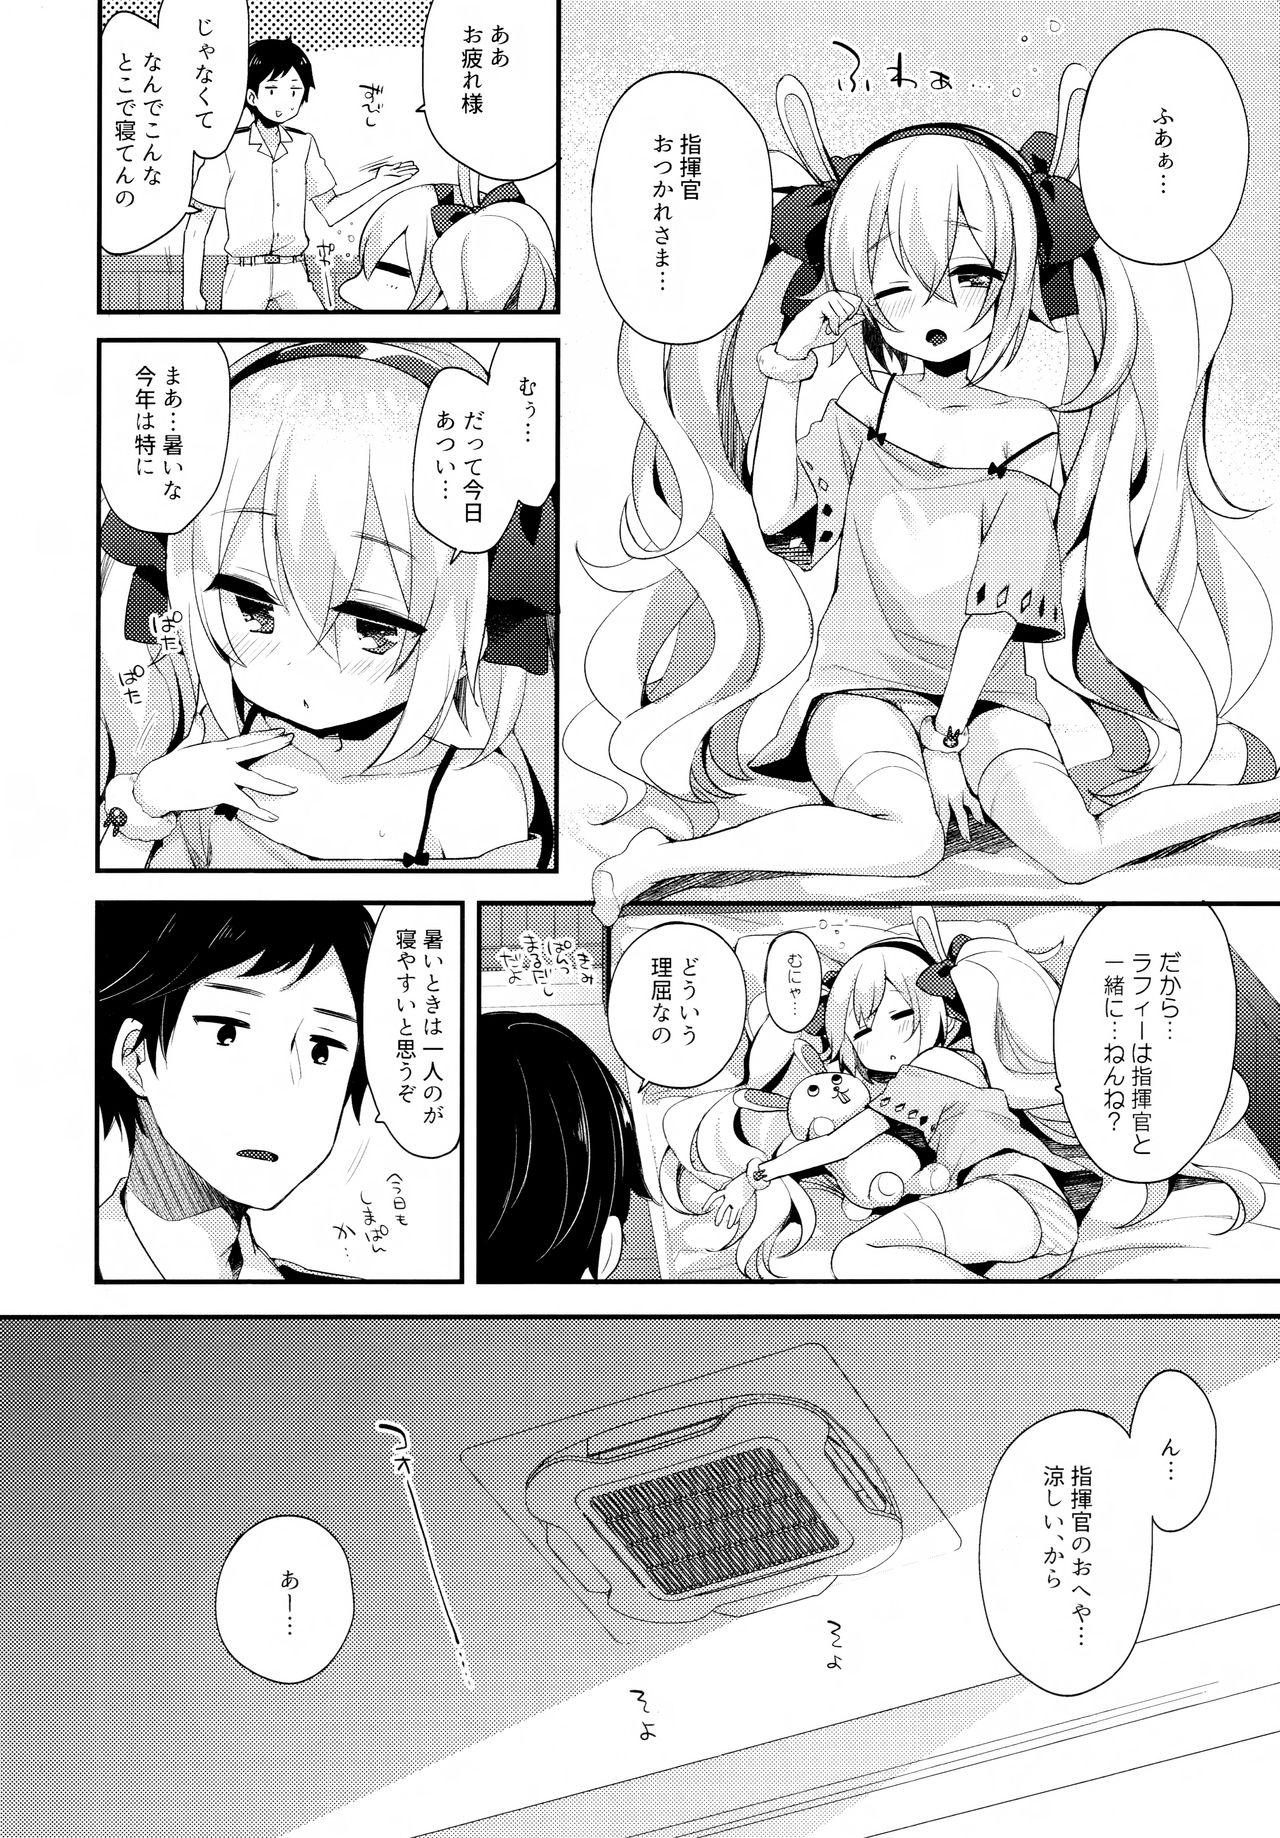 Cavalgando Shikikan, Kyou wa Atsui kara Laffey to Nenne... Shiyo? - Azur lane Perfect Body - Page 5